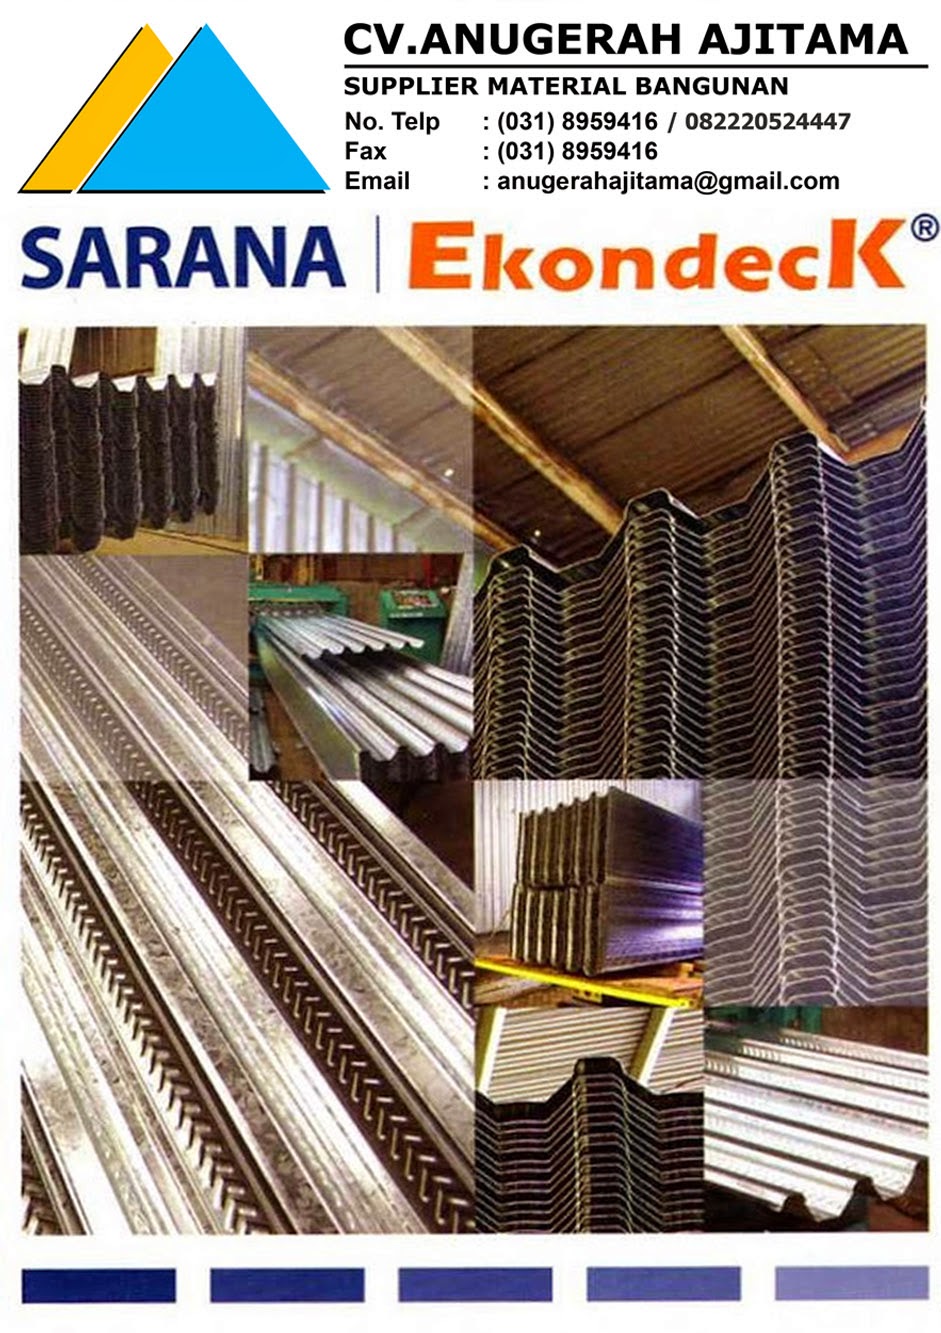 SARANA EKONDECK 890